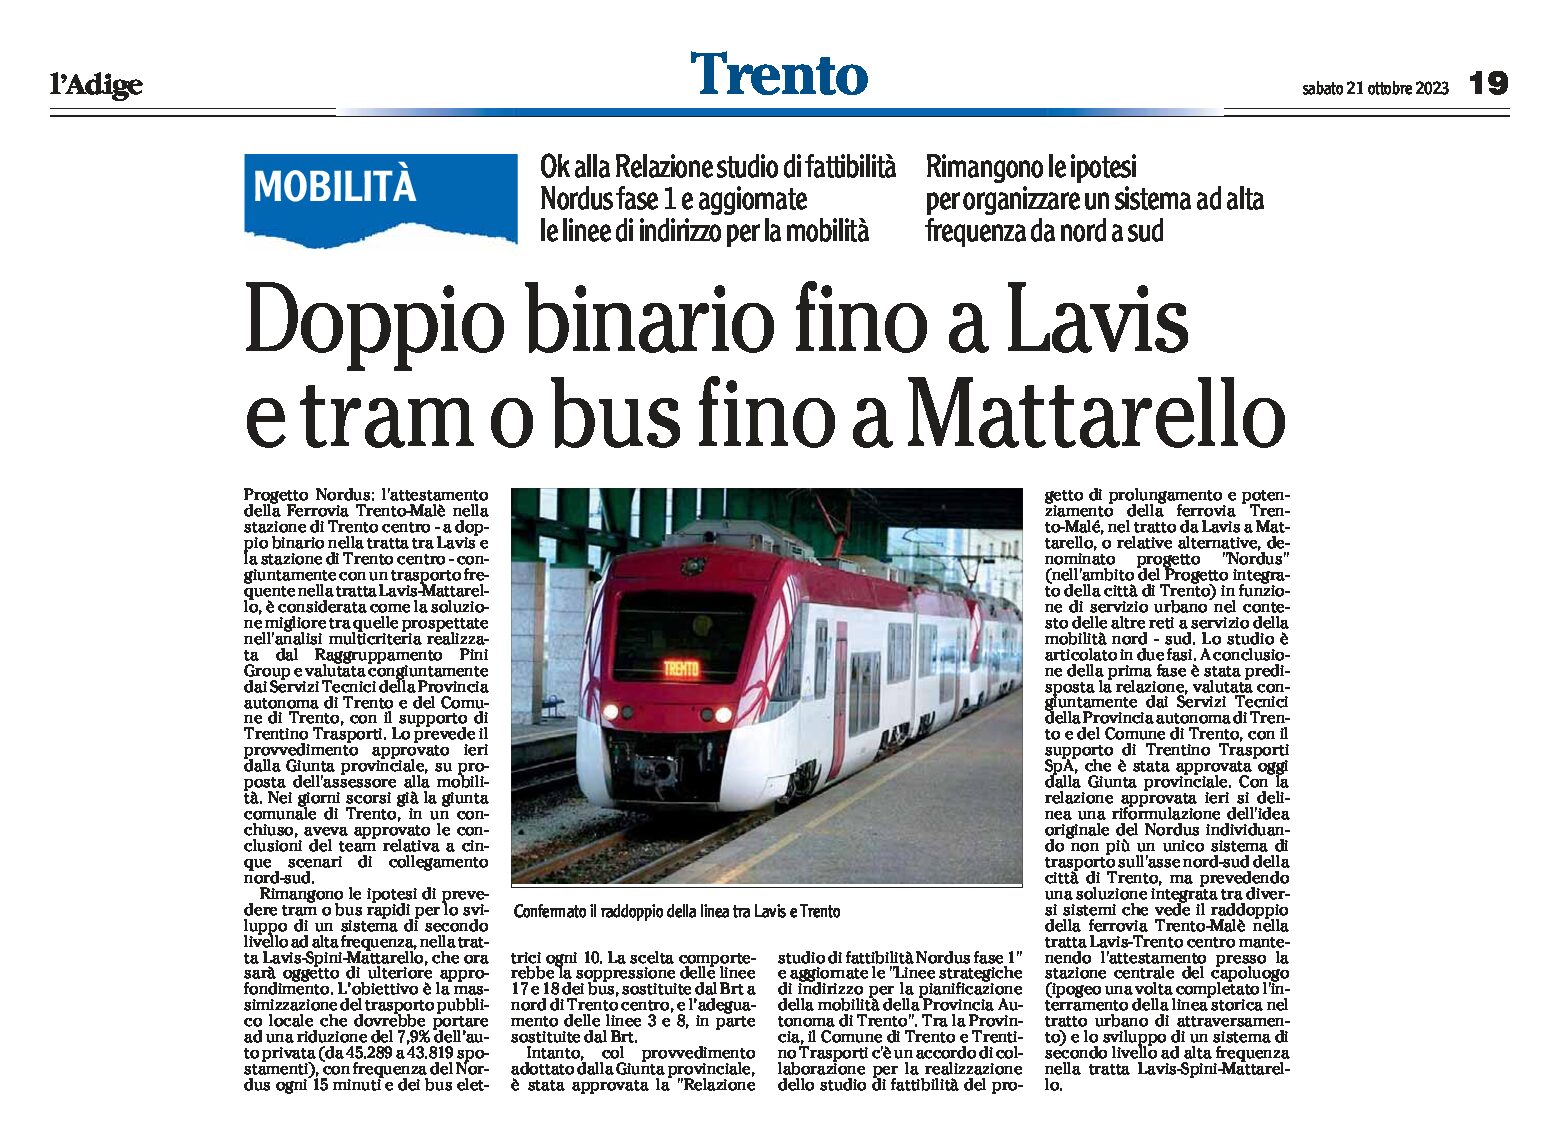 Trento, mobilità: doppio binario fino a Lavis e tram o bus fino a Mttarello